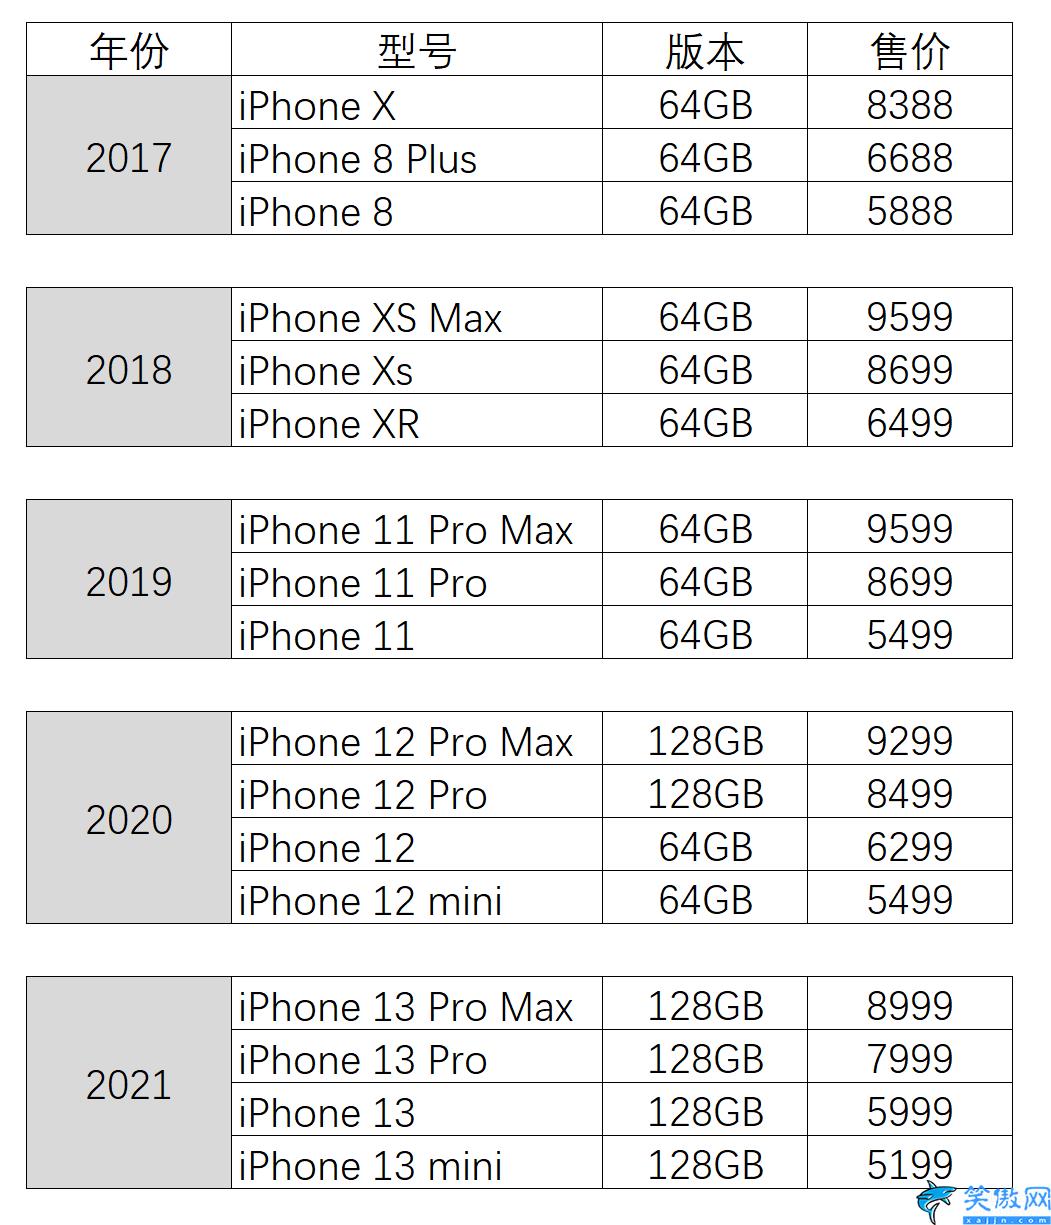 苹果iphone官网价格表,回看历代iPhone起售价